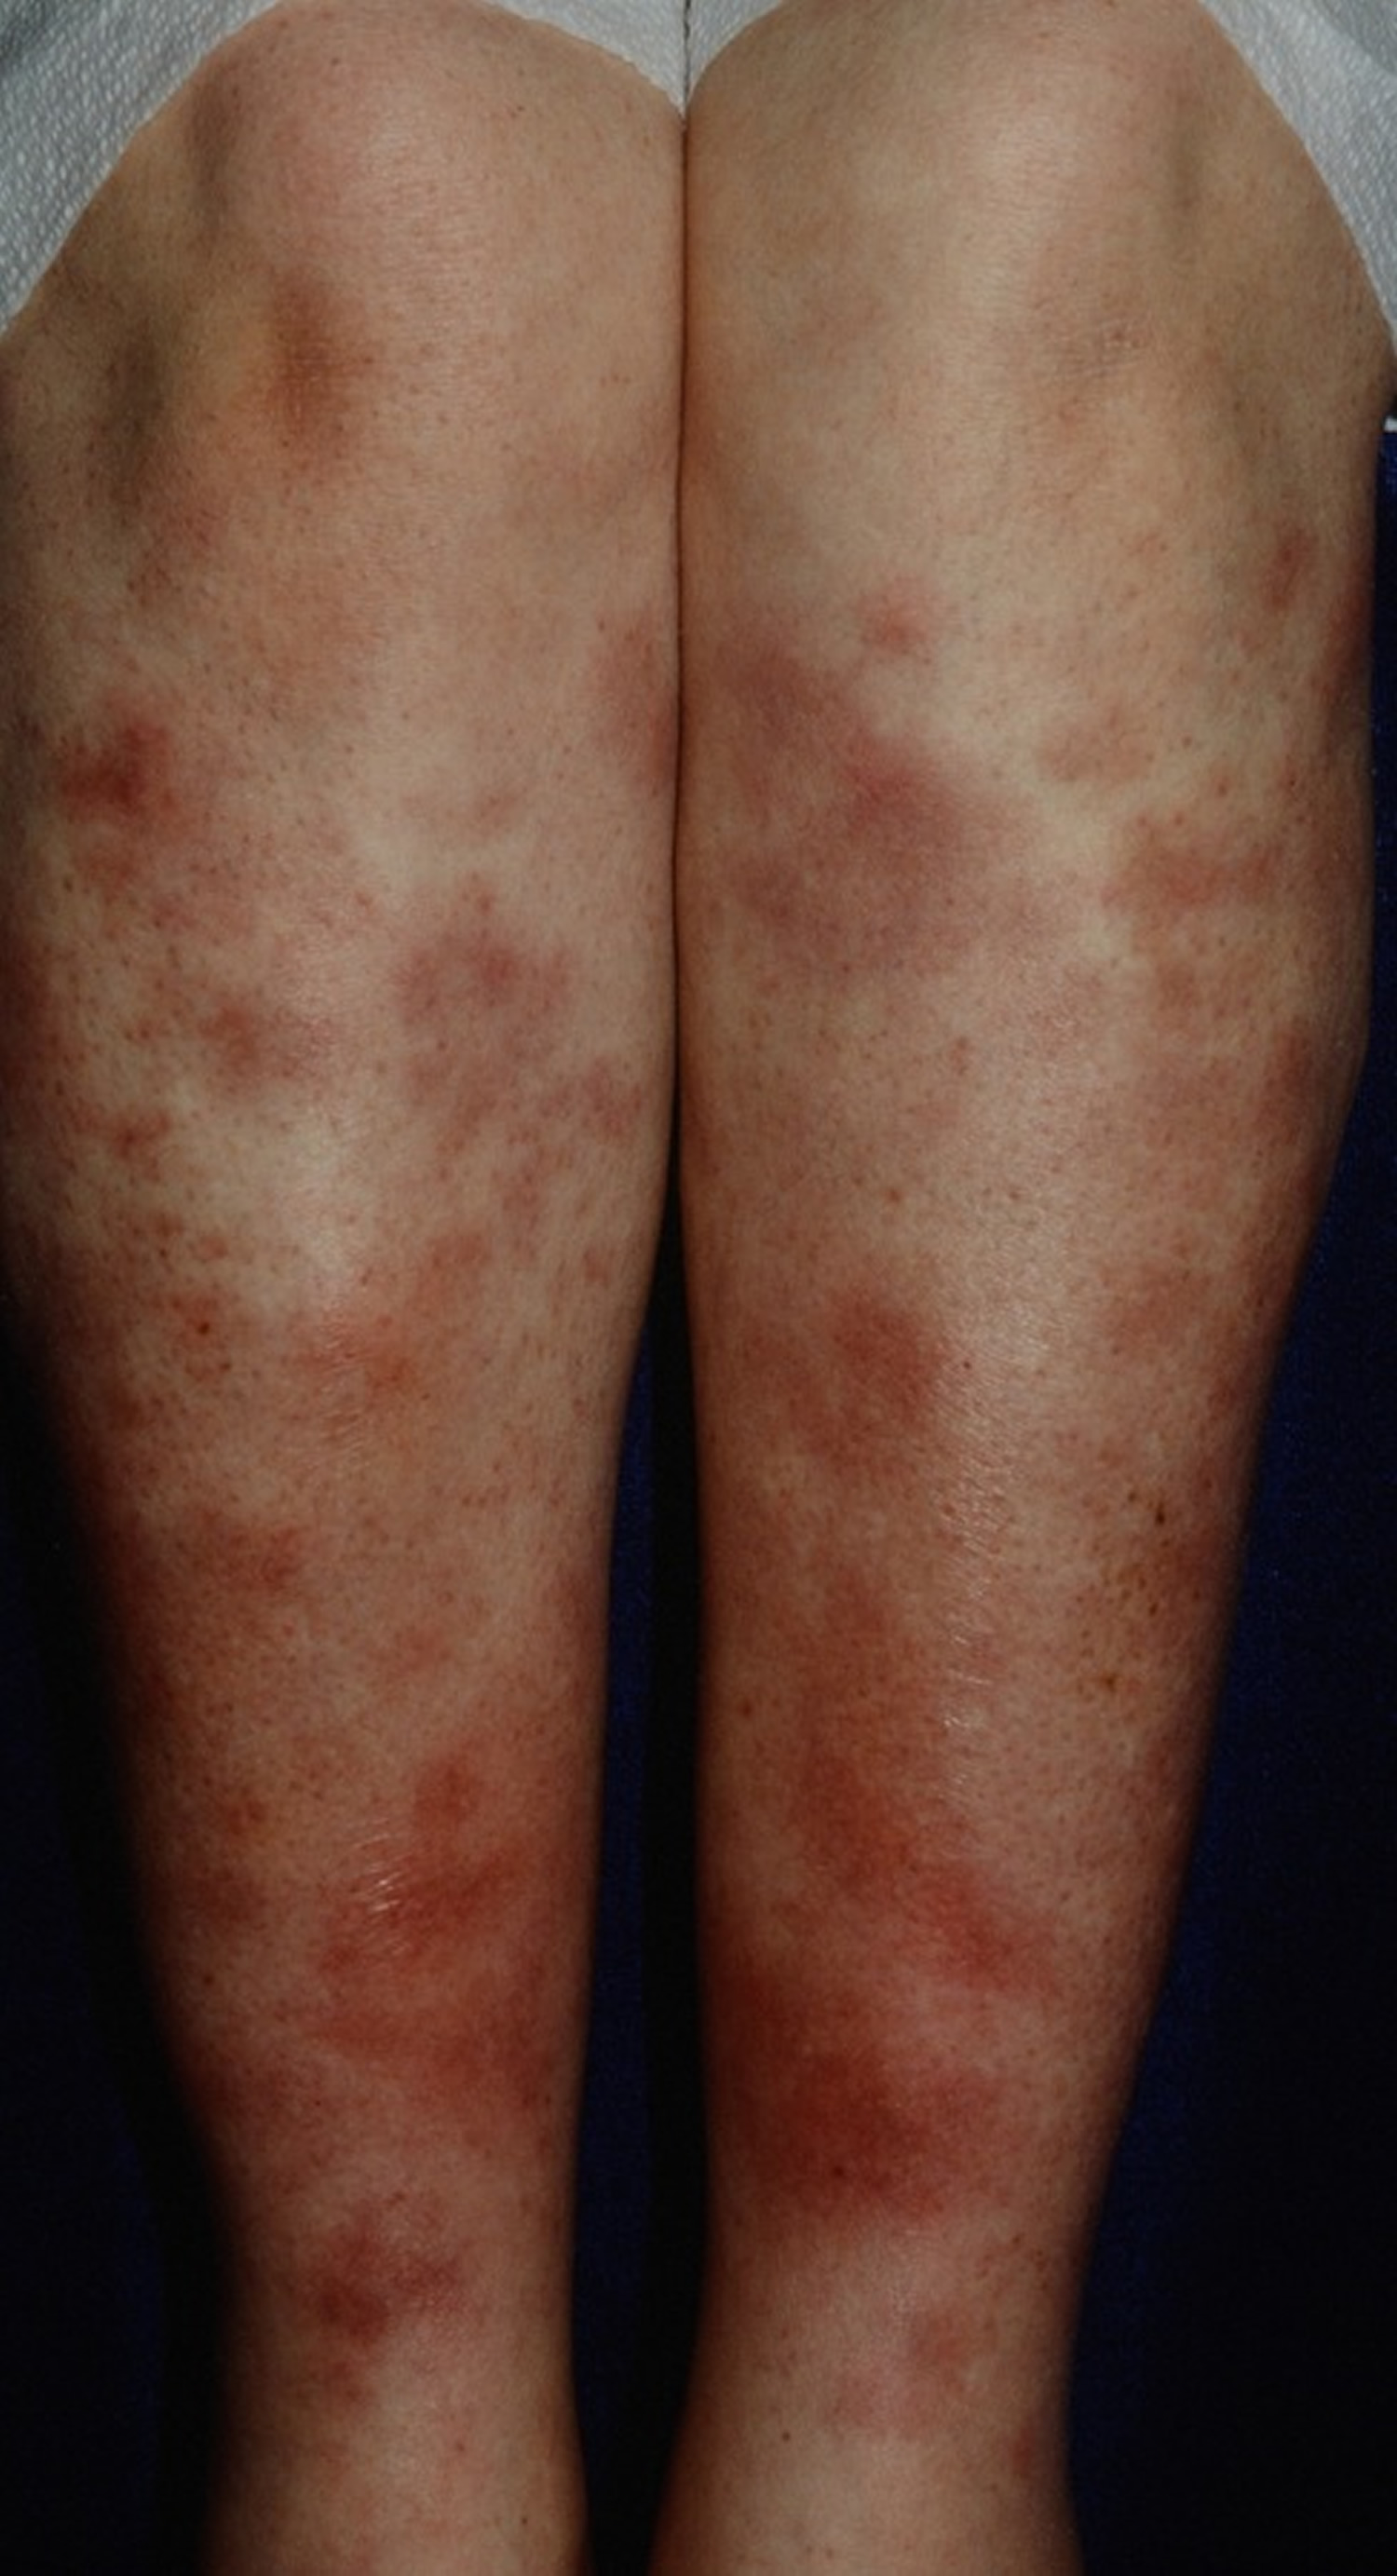 Valley fever rash - Erythema nodosum